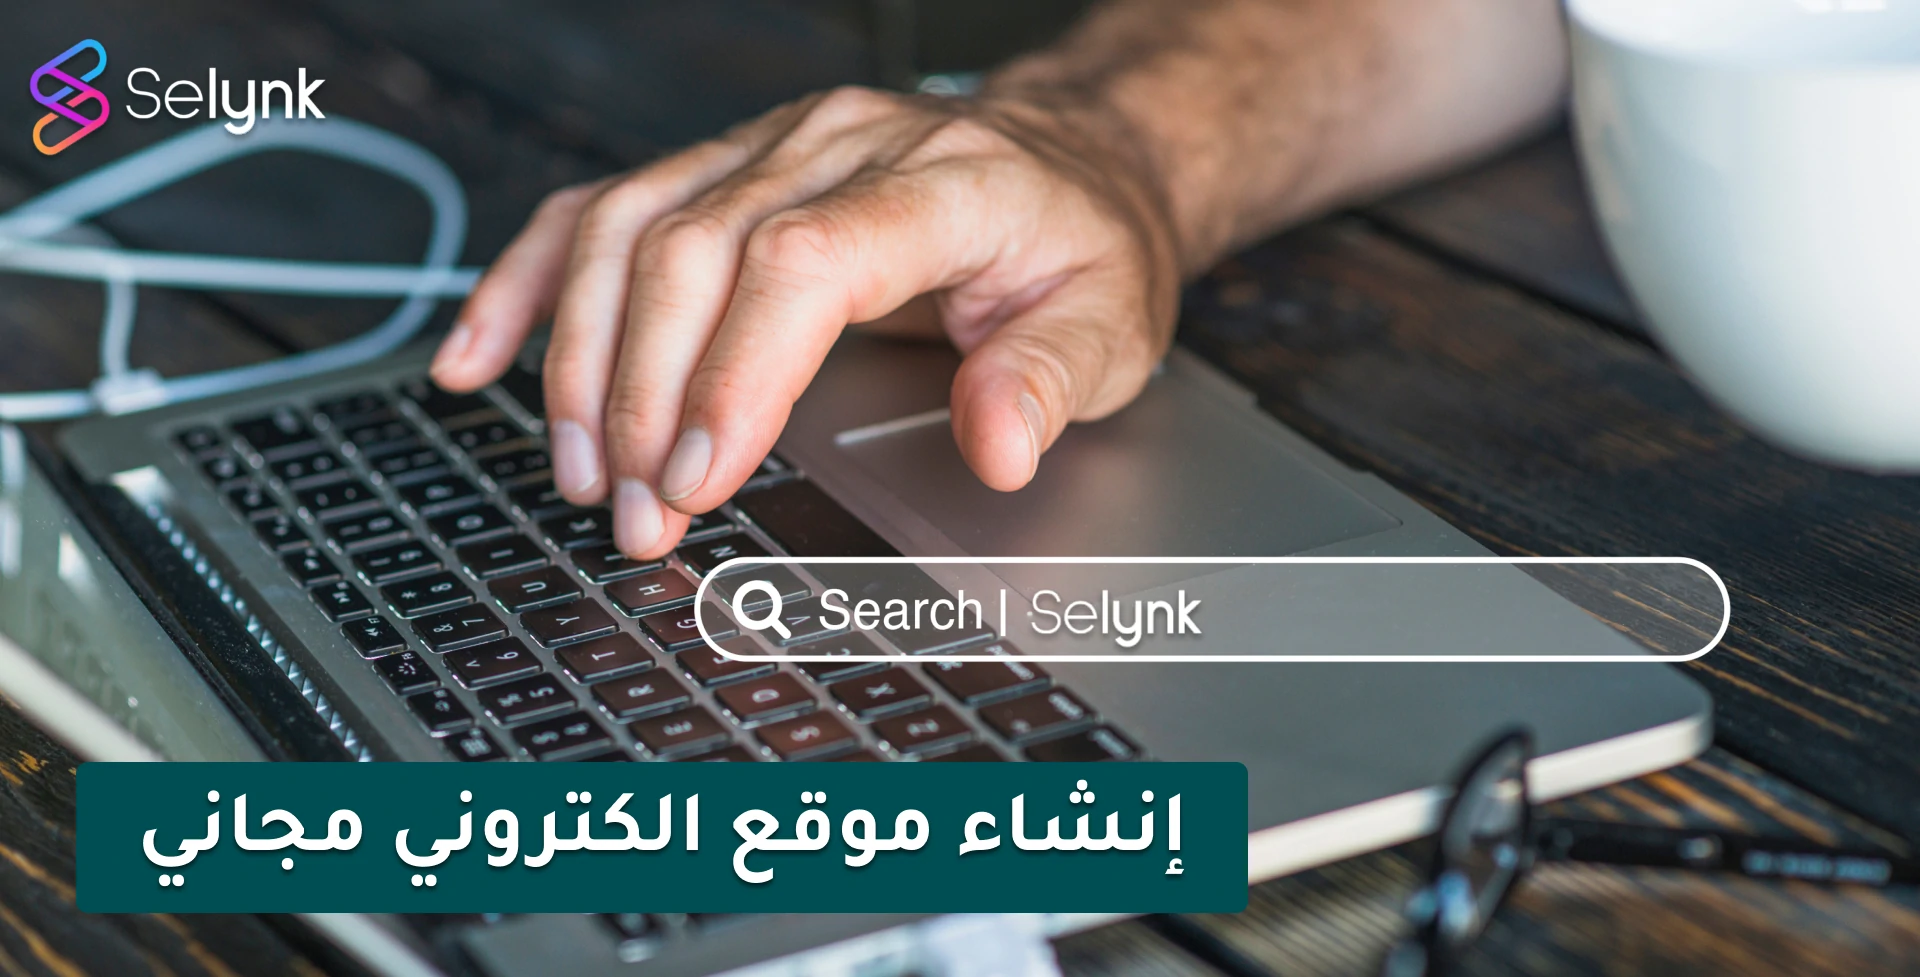 شركة إنشاء موقع إلكتروني - شركة Selynk لانشاء المتاجر و المواقع الالكترونية